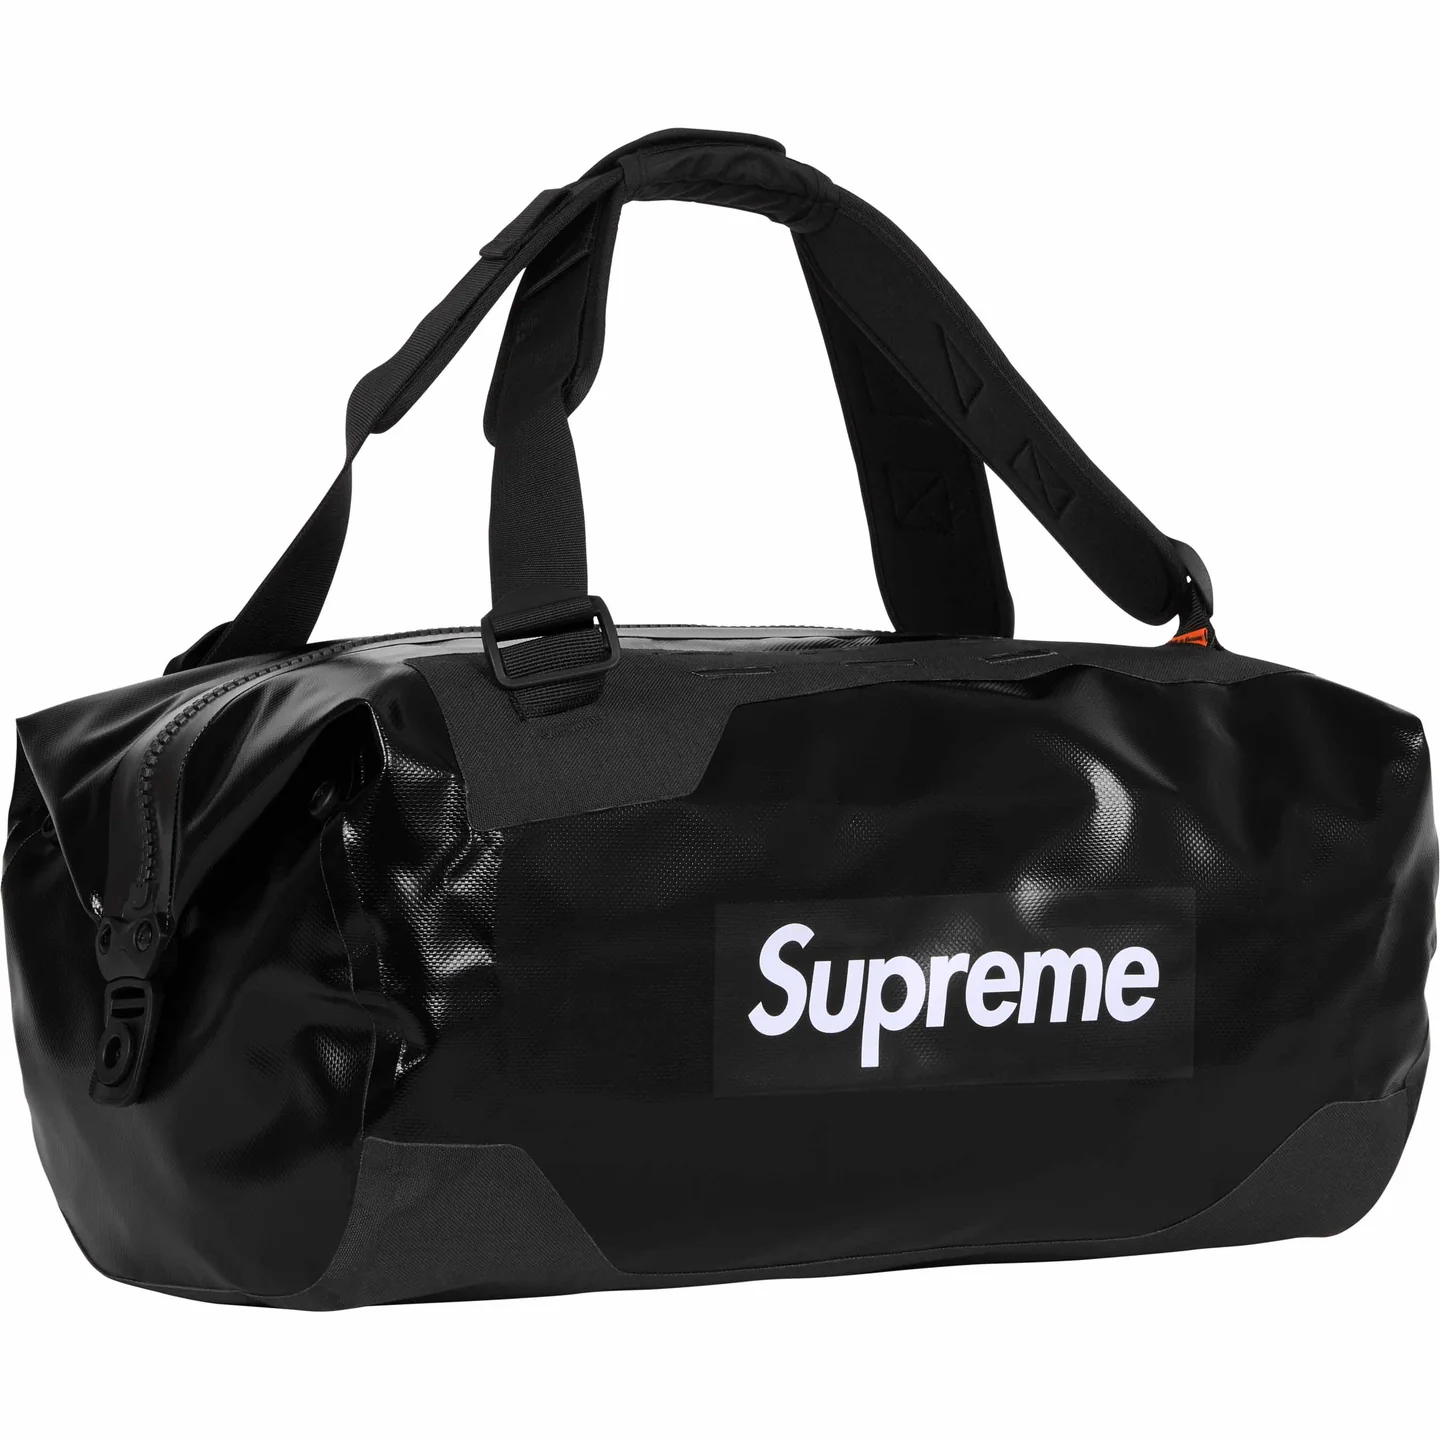 Supreme®/ORTLIEB Duffle Bag